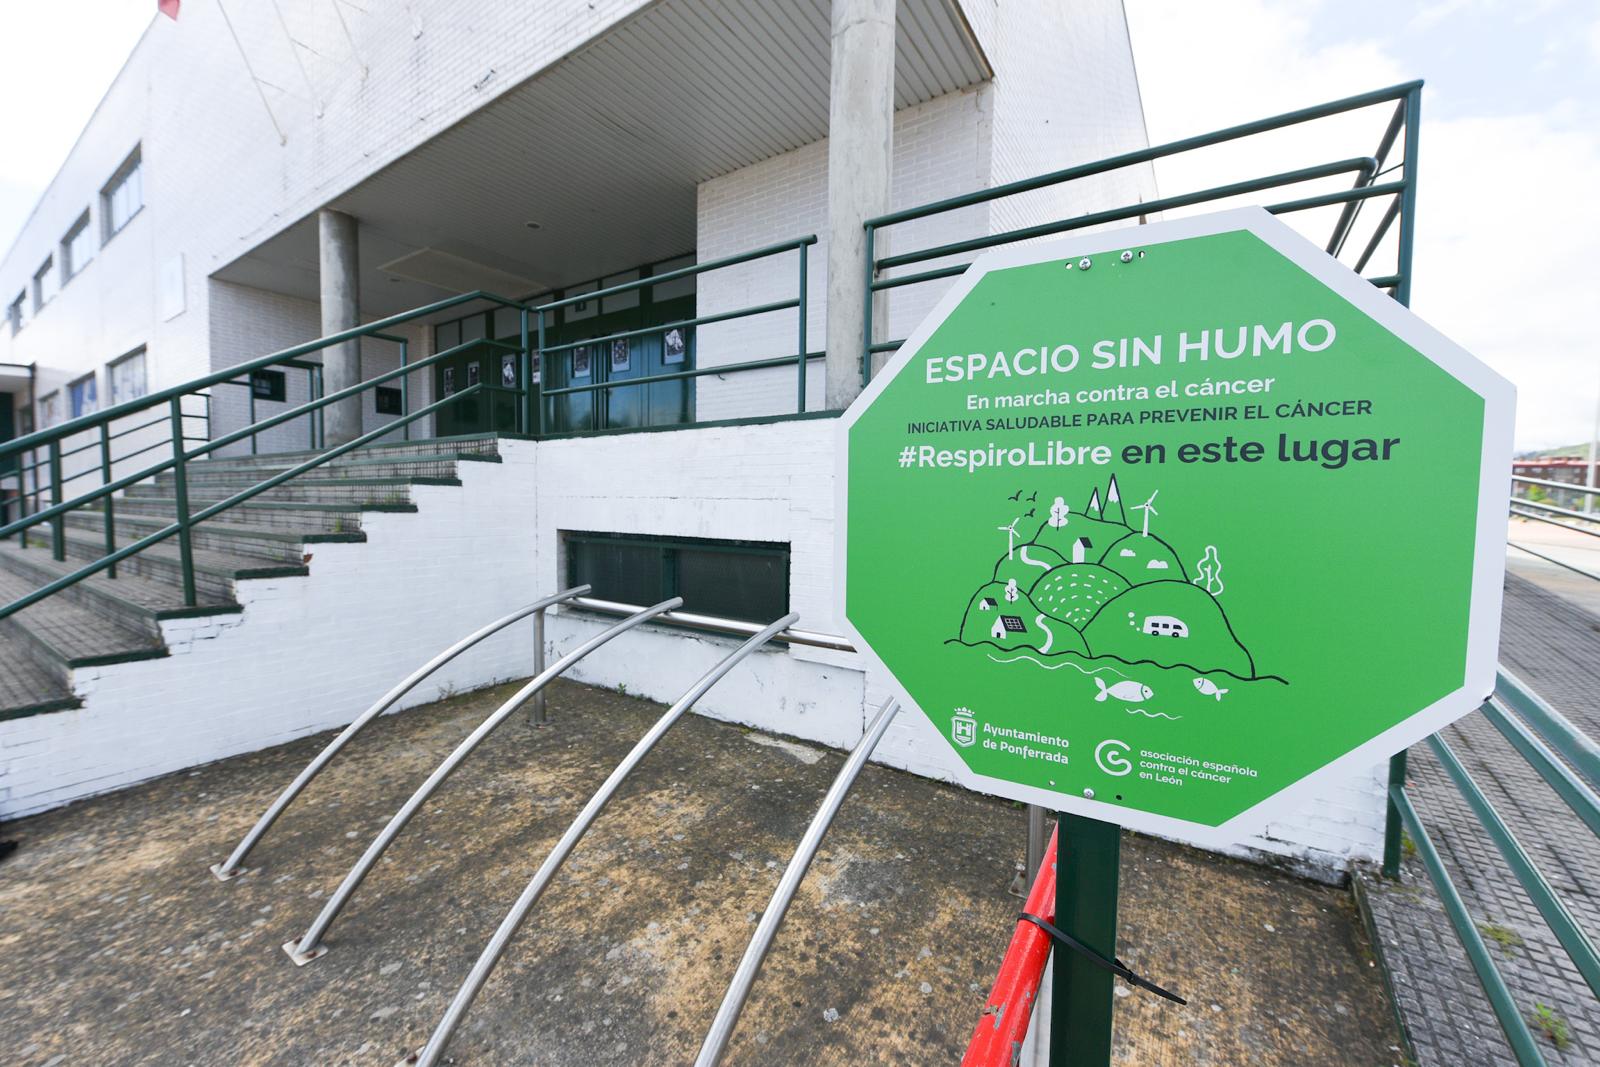 Ponferrada Sports City has been declared a smoke-free venue "Encouraging healthy living".  /Kineto